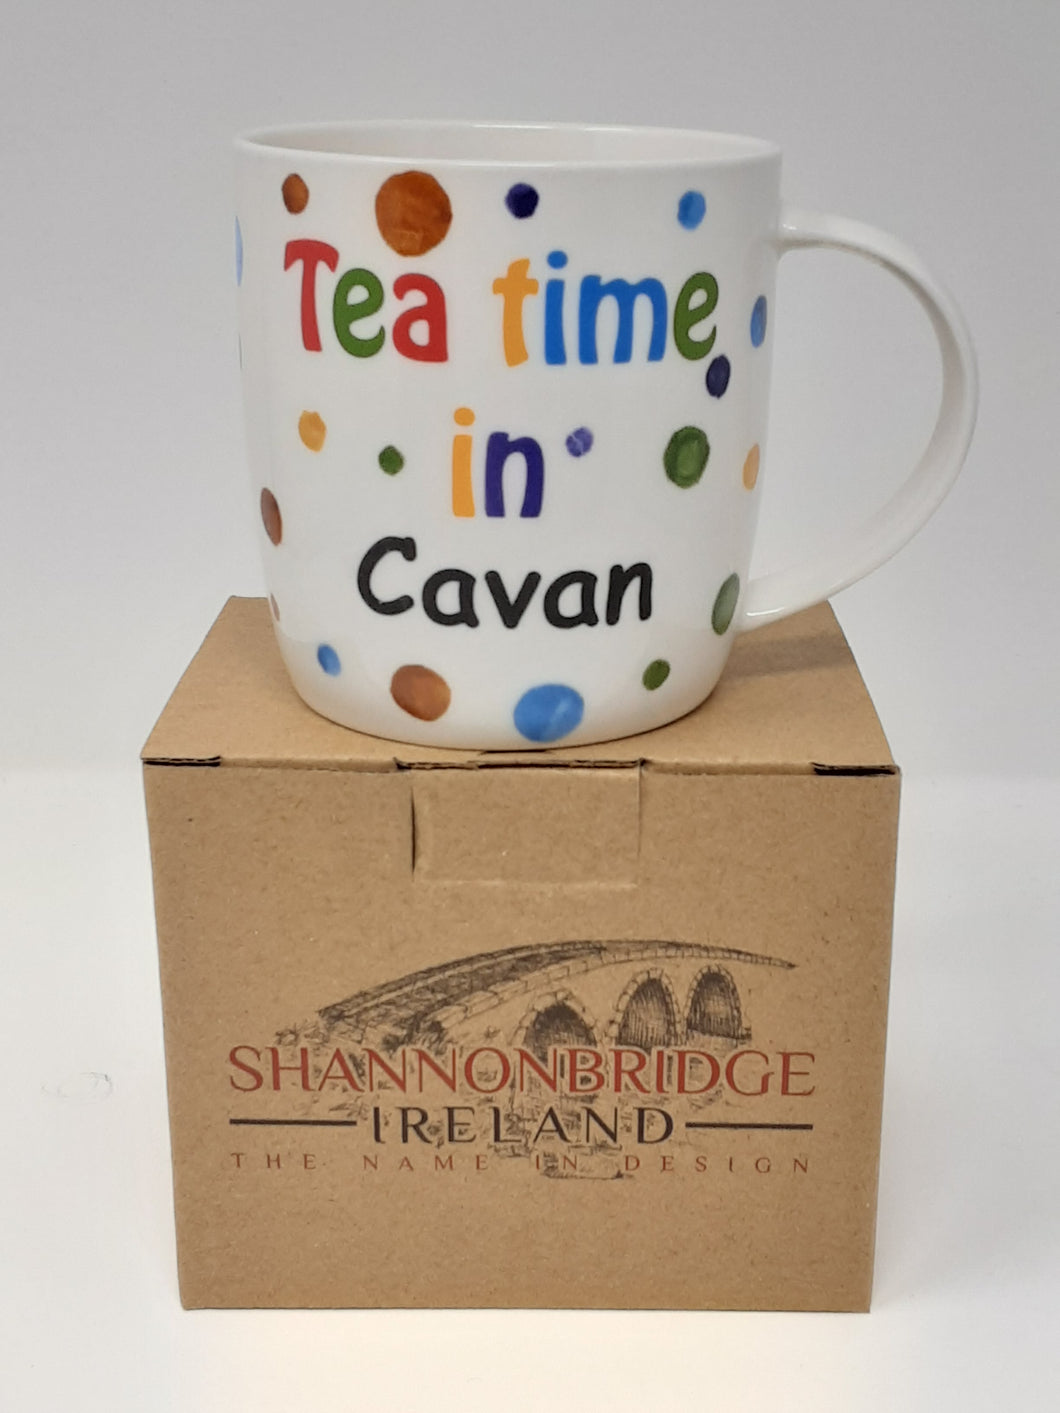 Tea time in Cavan mug